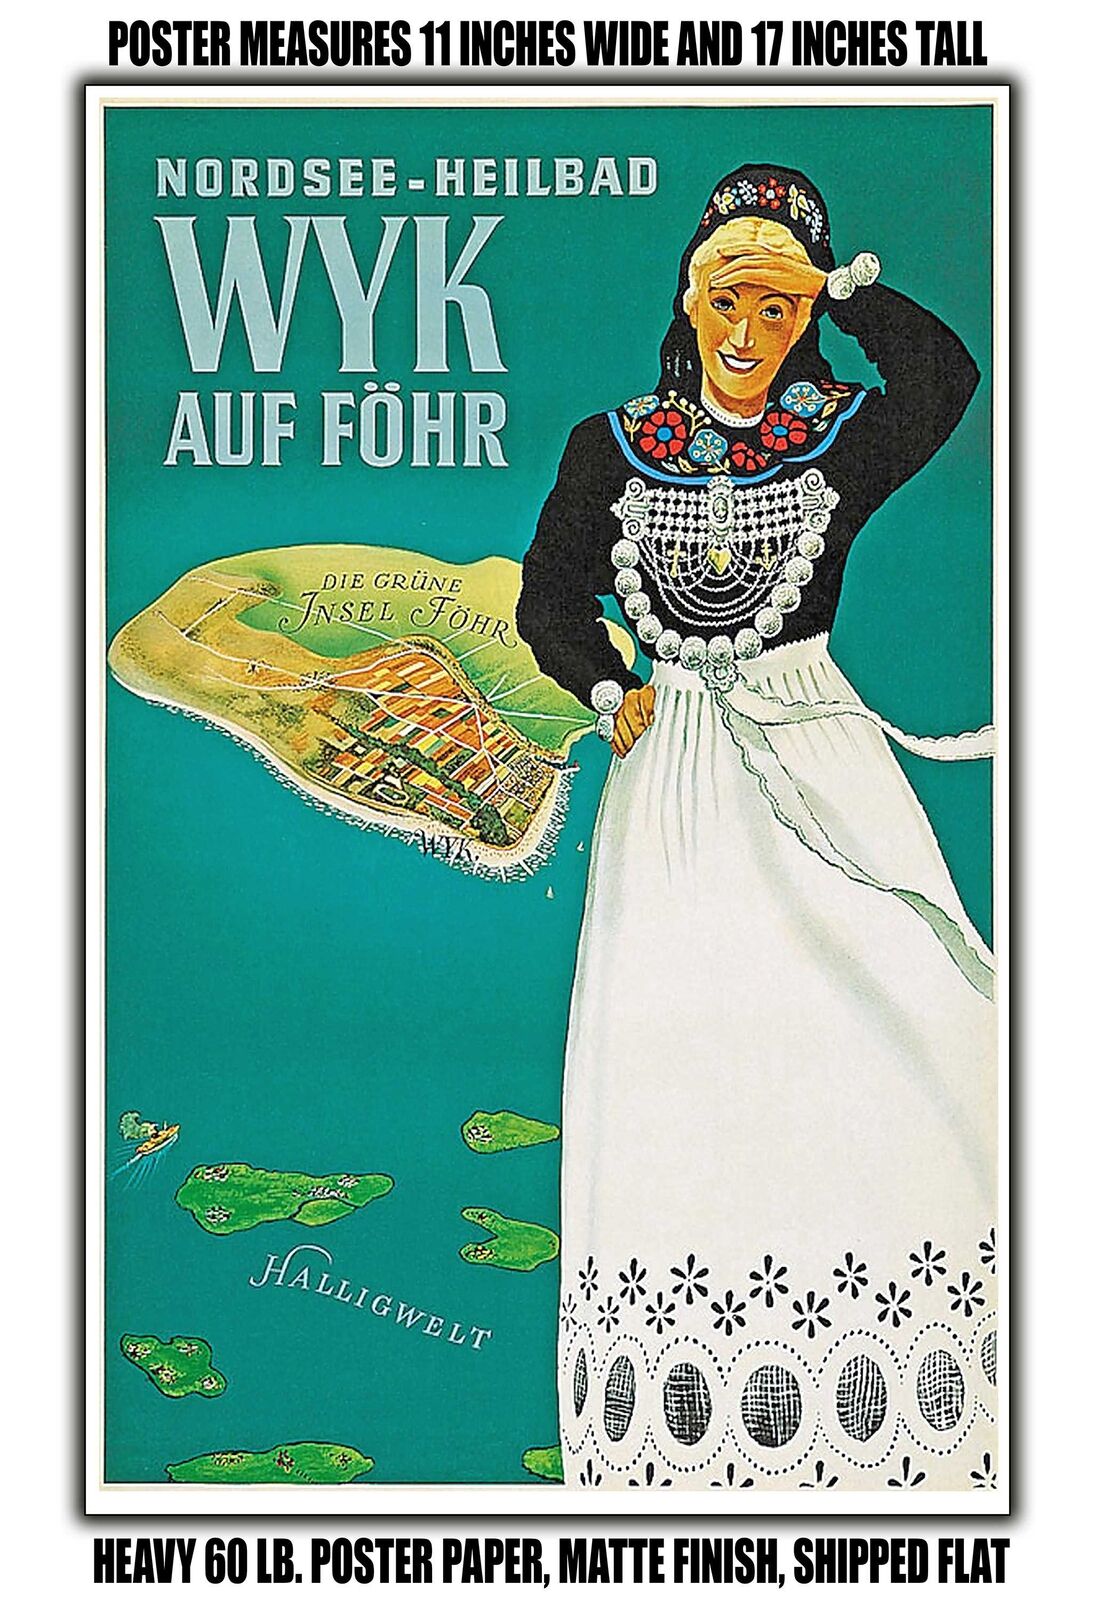 11x17 POSTER - 1952 North Sea health resort Wyk auf Fohr Hallig world